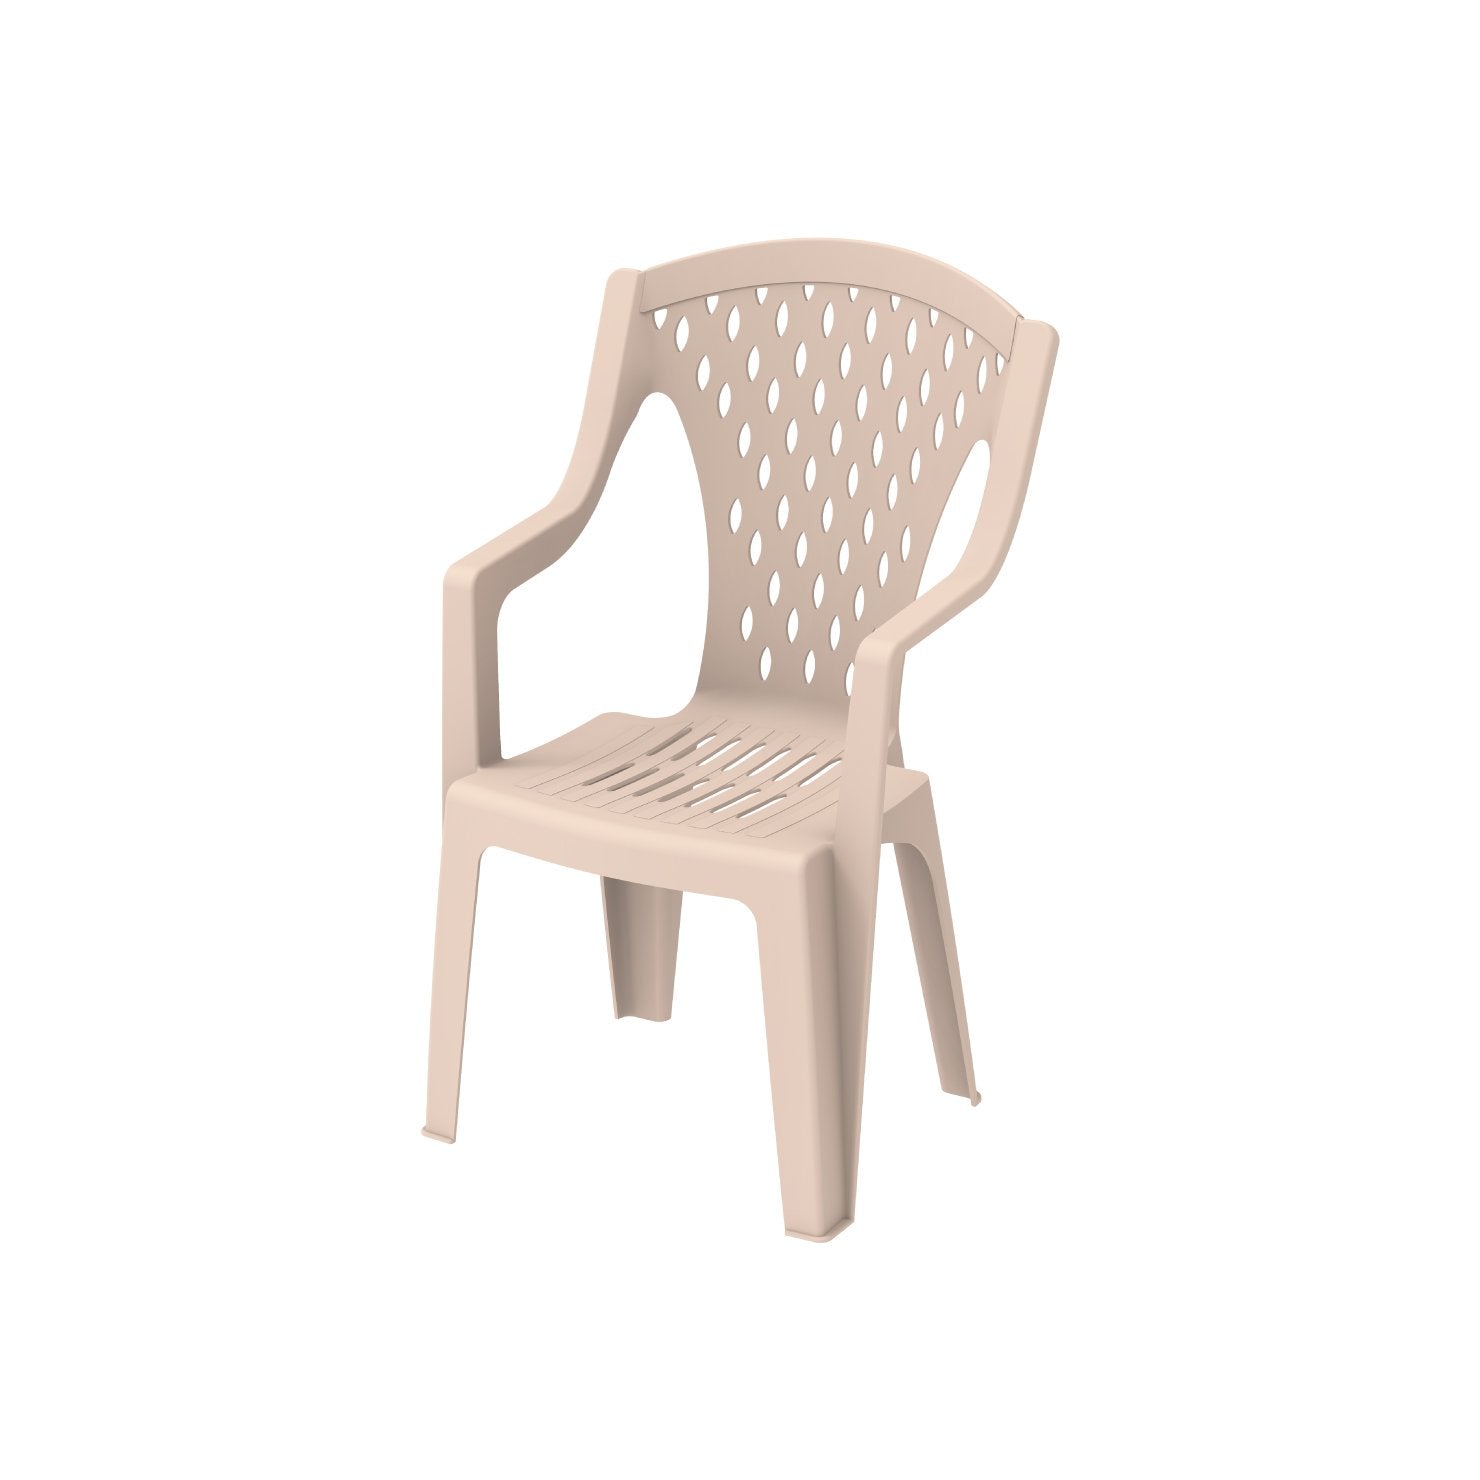 Queen Outdoor Garden Chair - Cosmoplast Bahrain